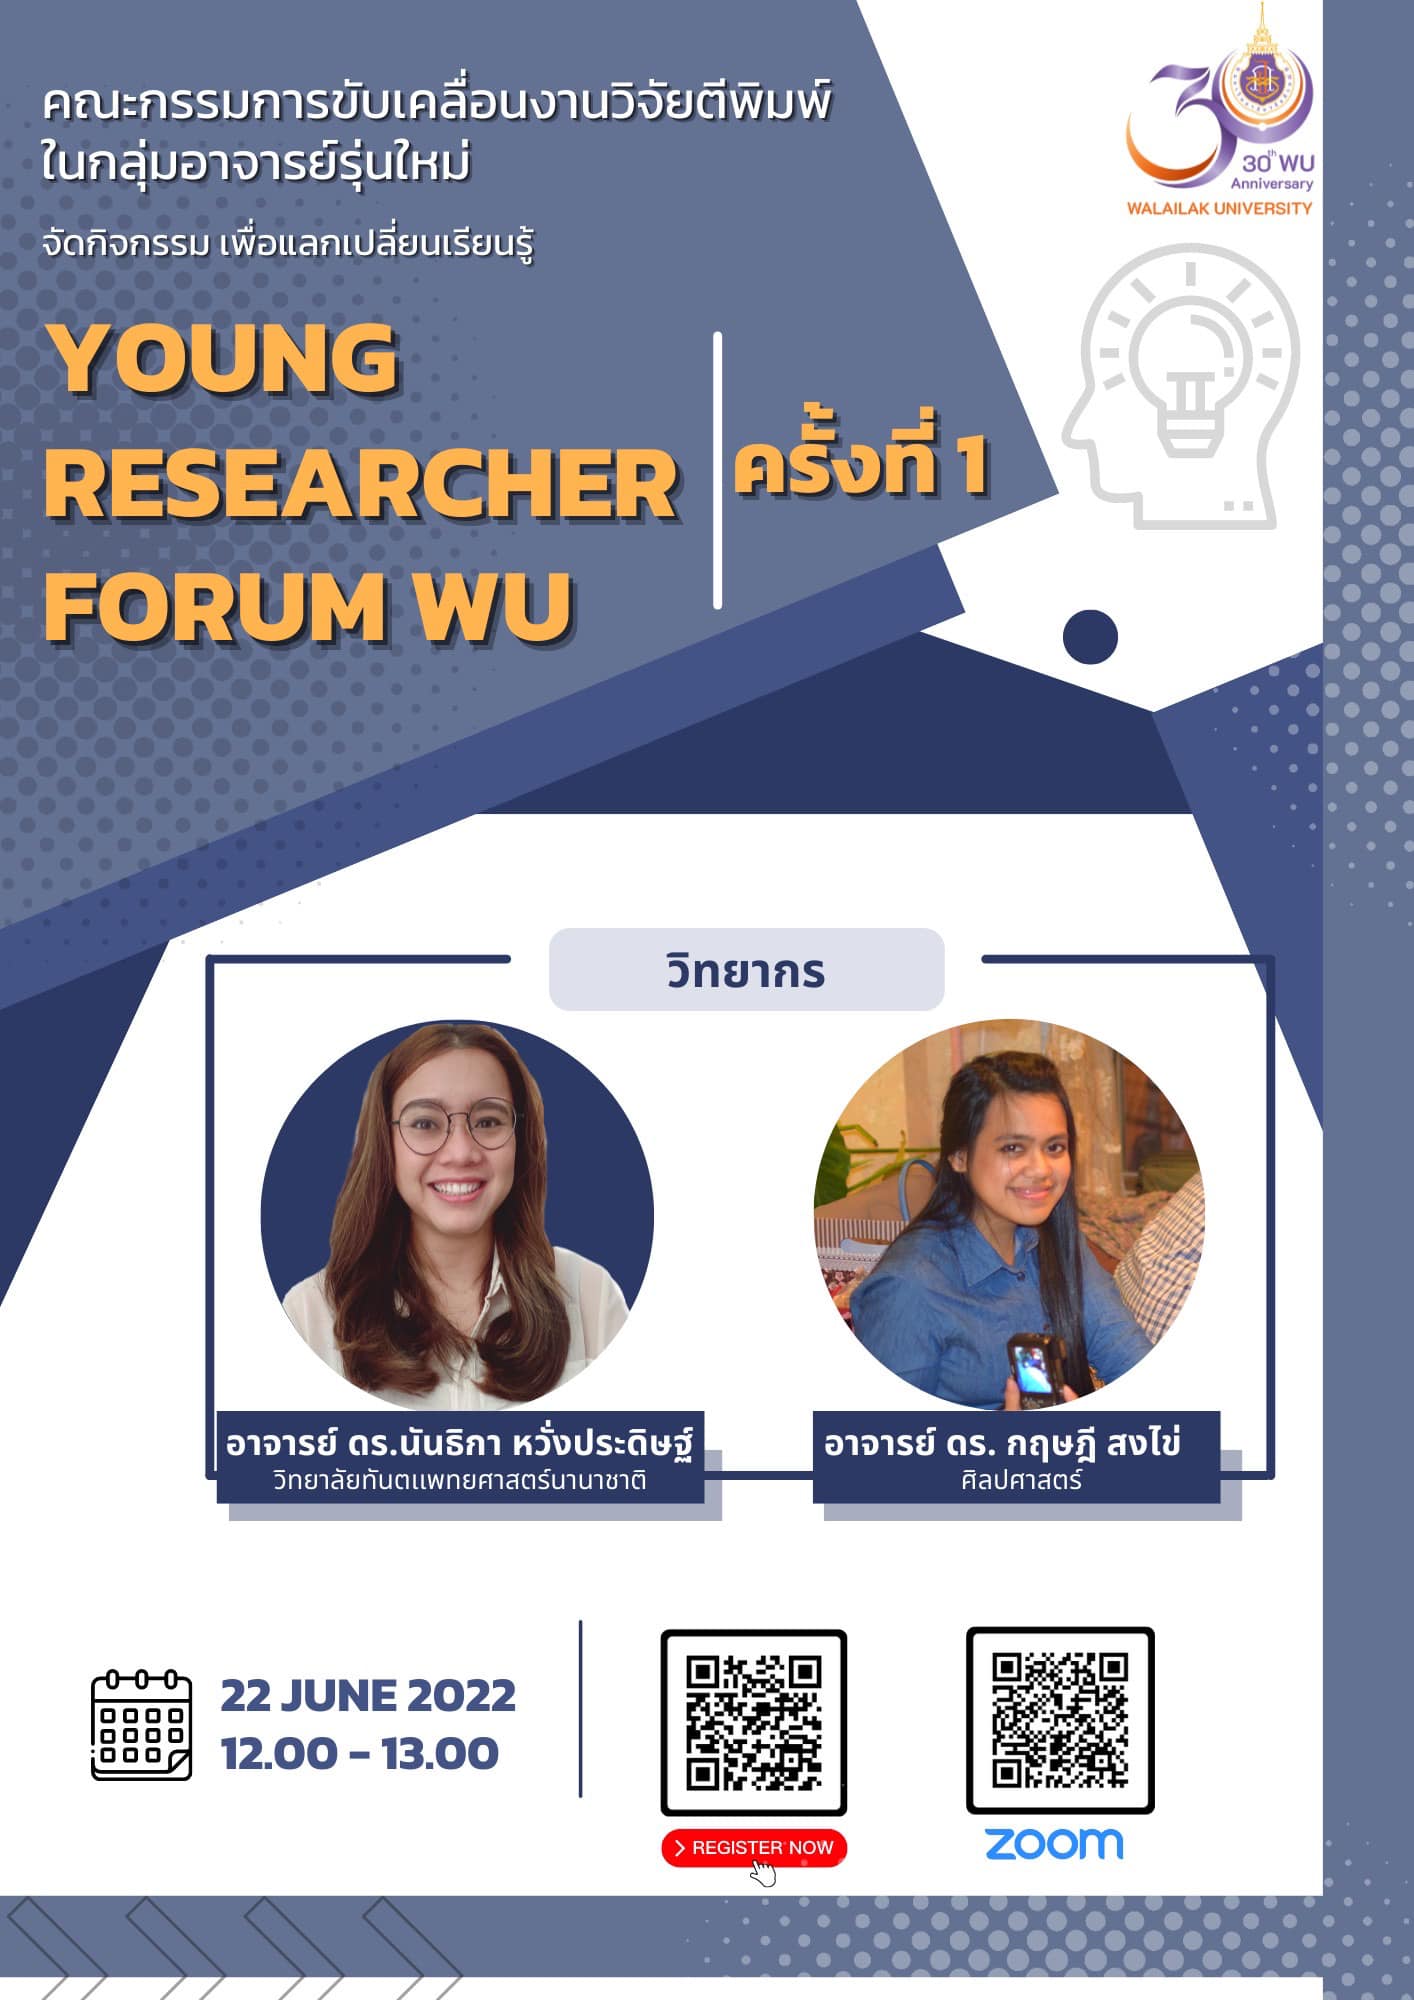 สถาบันส่งเสริมการวิจัยและนวัตกรรมสู่ความเป็นเลิศ และ คณะกรรมการขับเคลื่อนงานวิจัยตีพิมพ์ในกลุ่มอาจารย์รุ่นใหม่ ขอเชิญเข้าร่วมกิจกรรม "Young Researcher Forum WU " ครั้งที่ 1